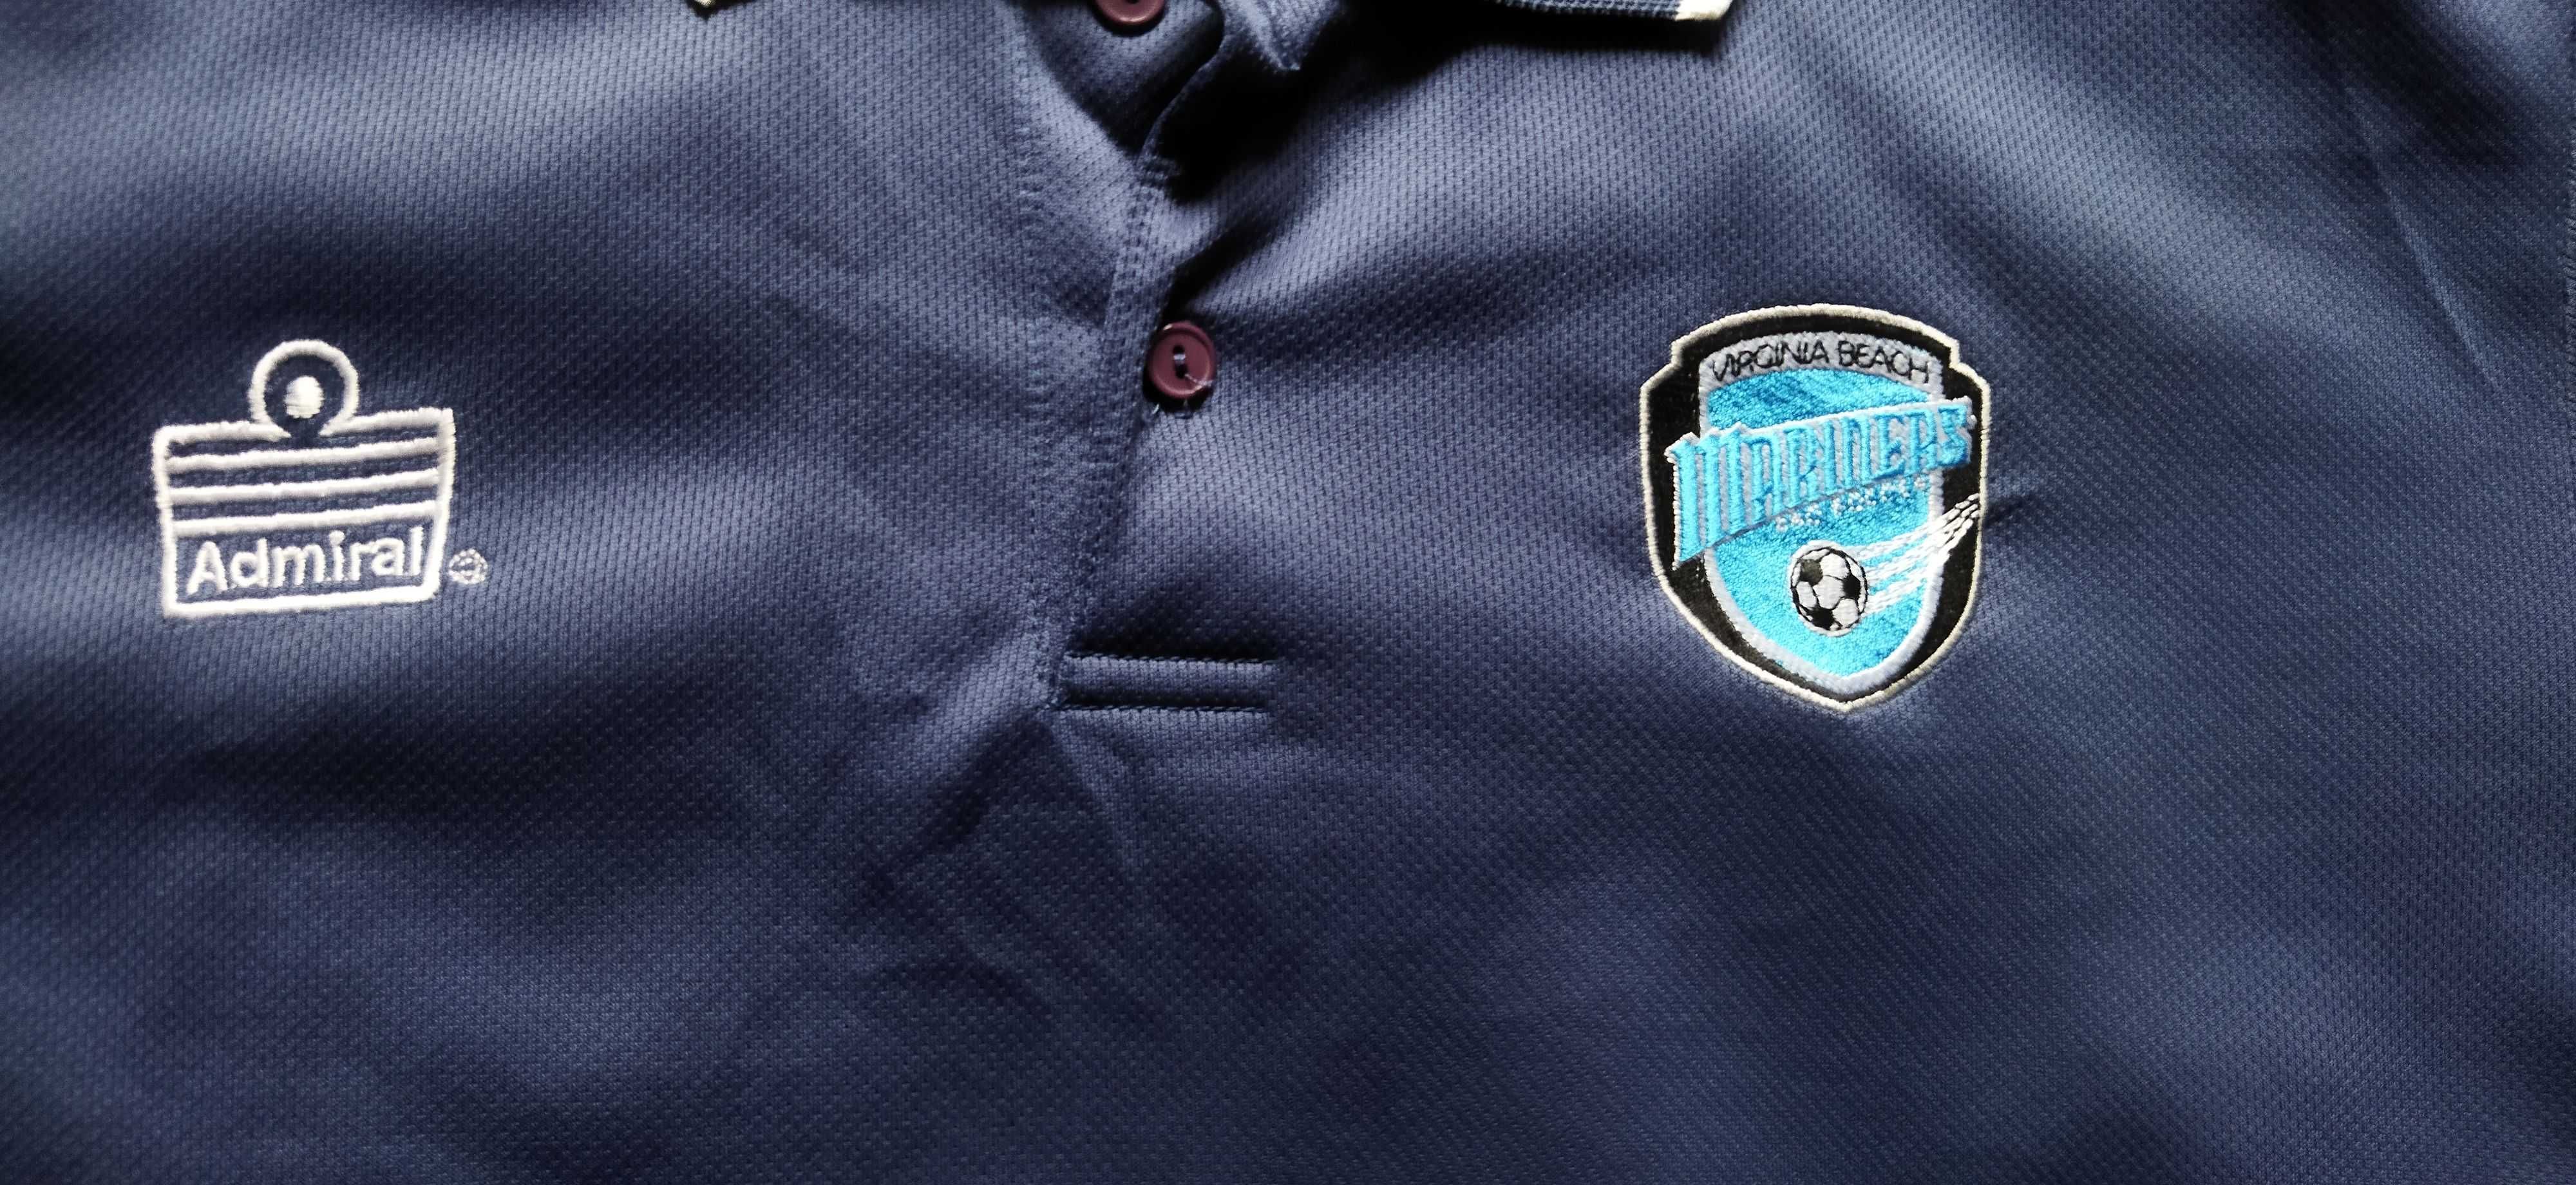 Koszulka piłkarska polo Virginia Beach Mariners USA MLS USL Admiral